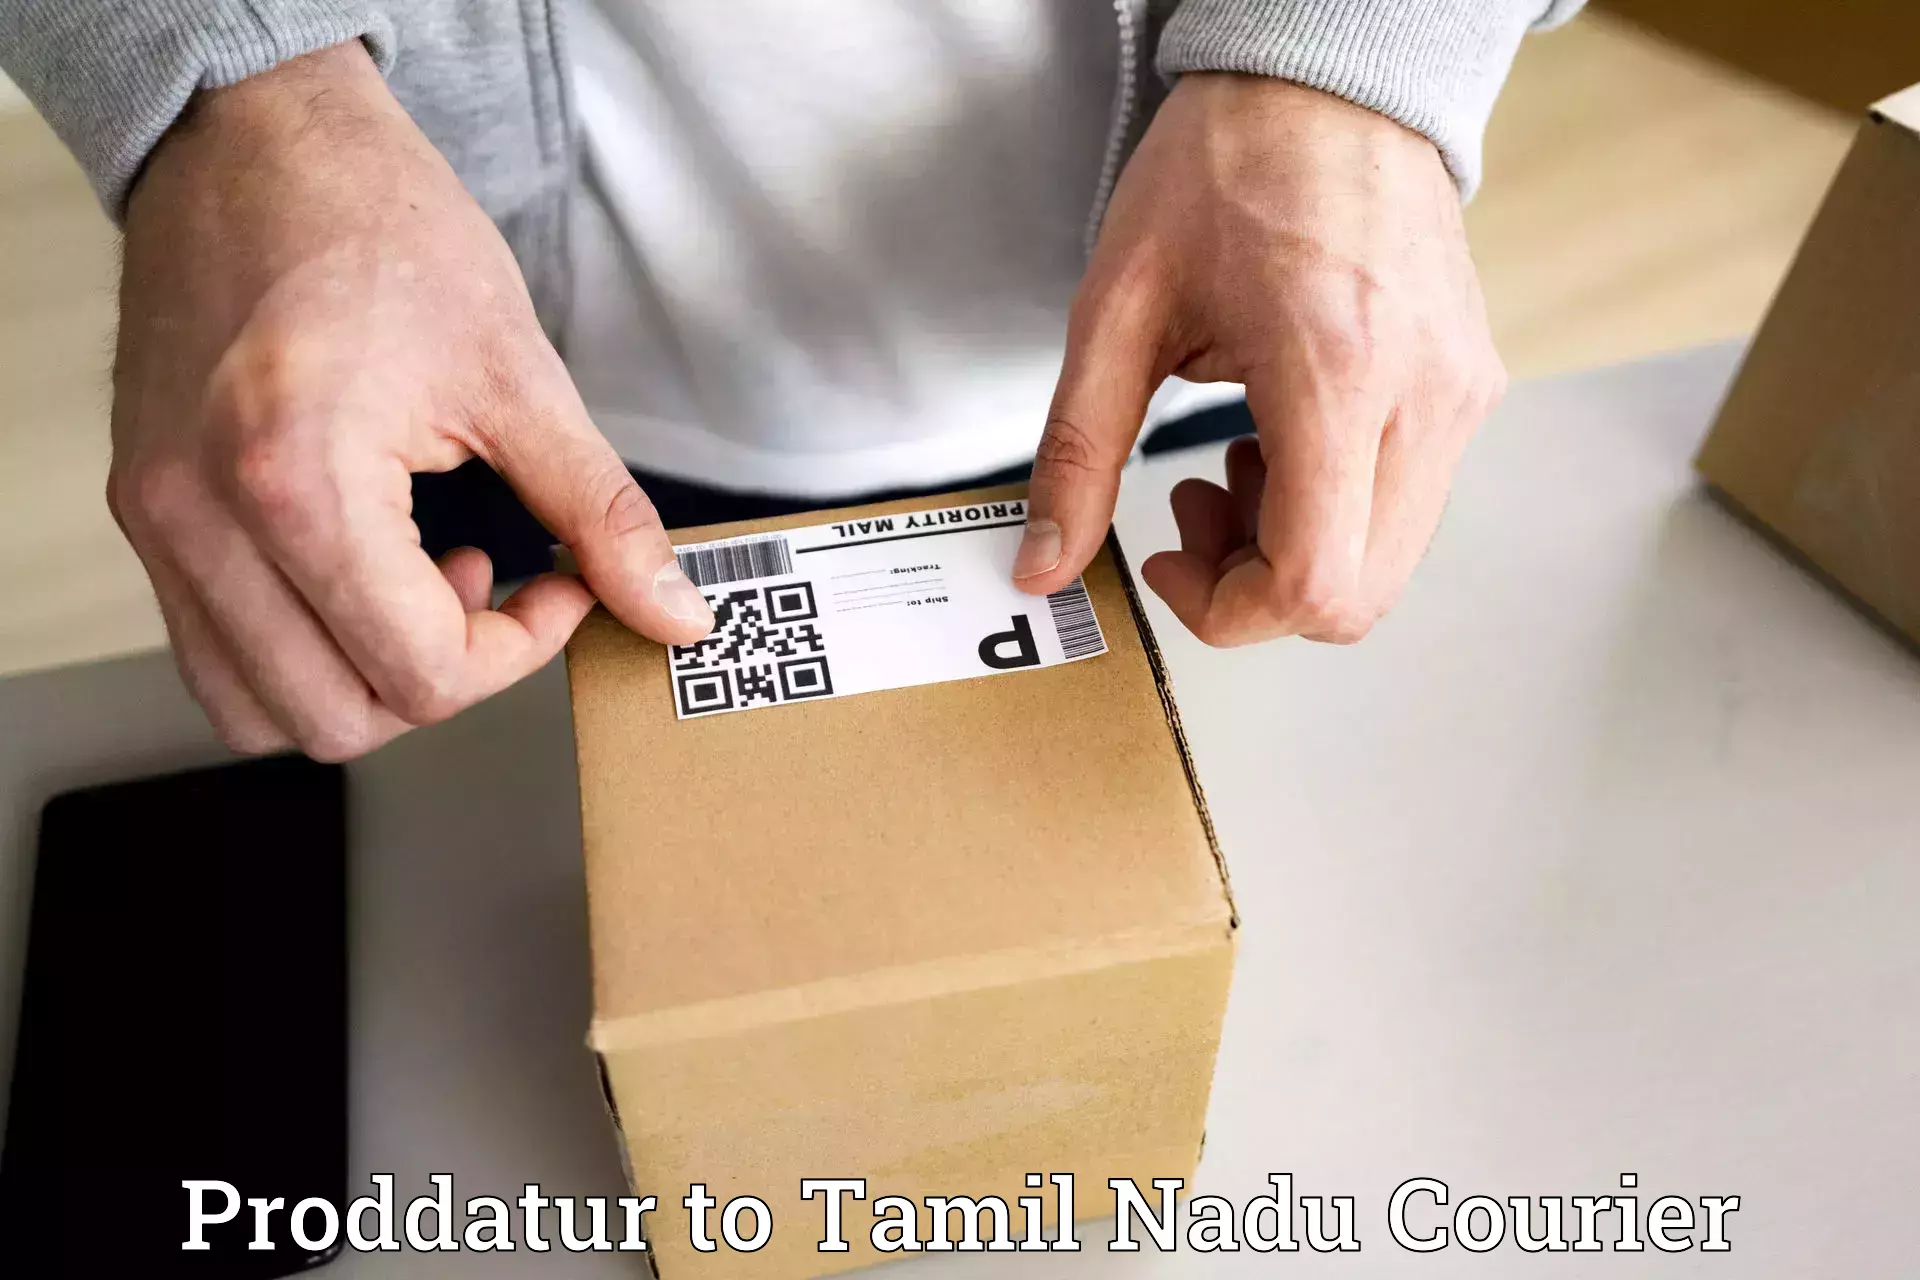 On-demand courier Proddatur to Tamil Nadu